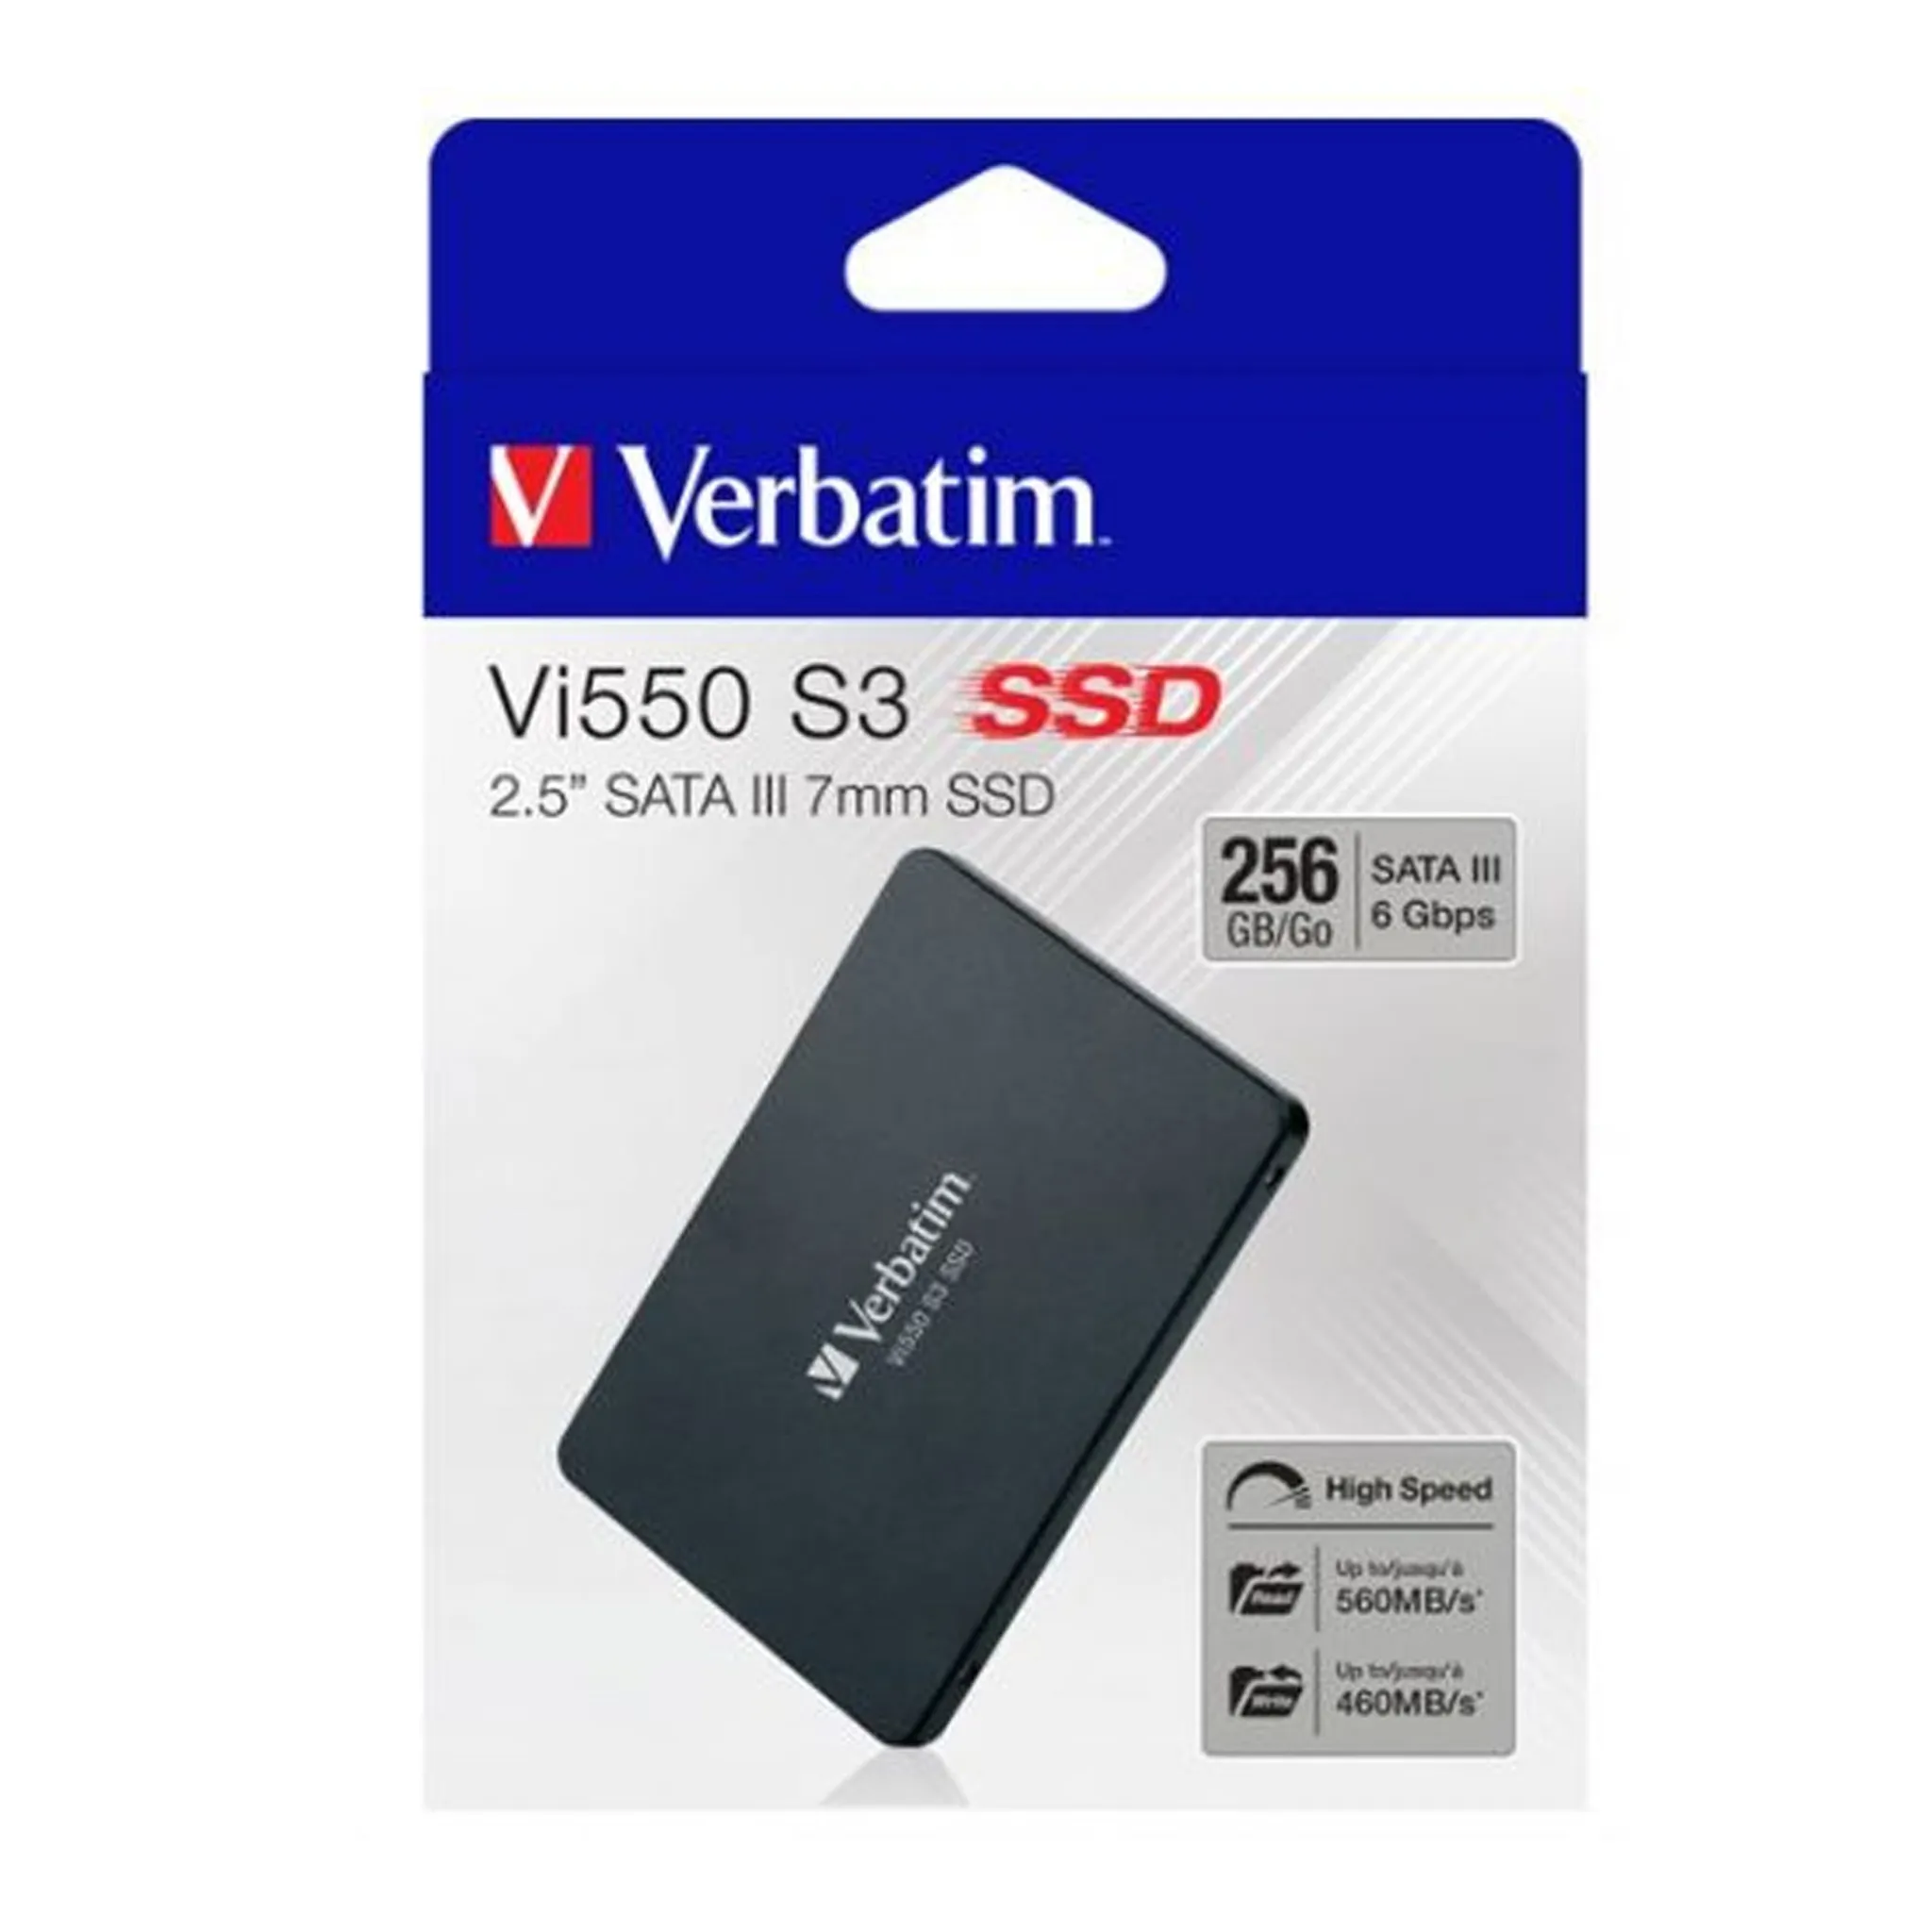 TRANSCEND SSD220Q Disque SSD - 500 Go - Interne - 2.5 - SATA 6Gb